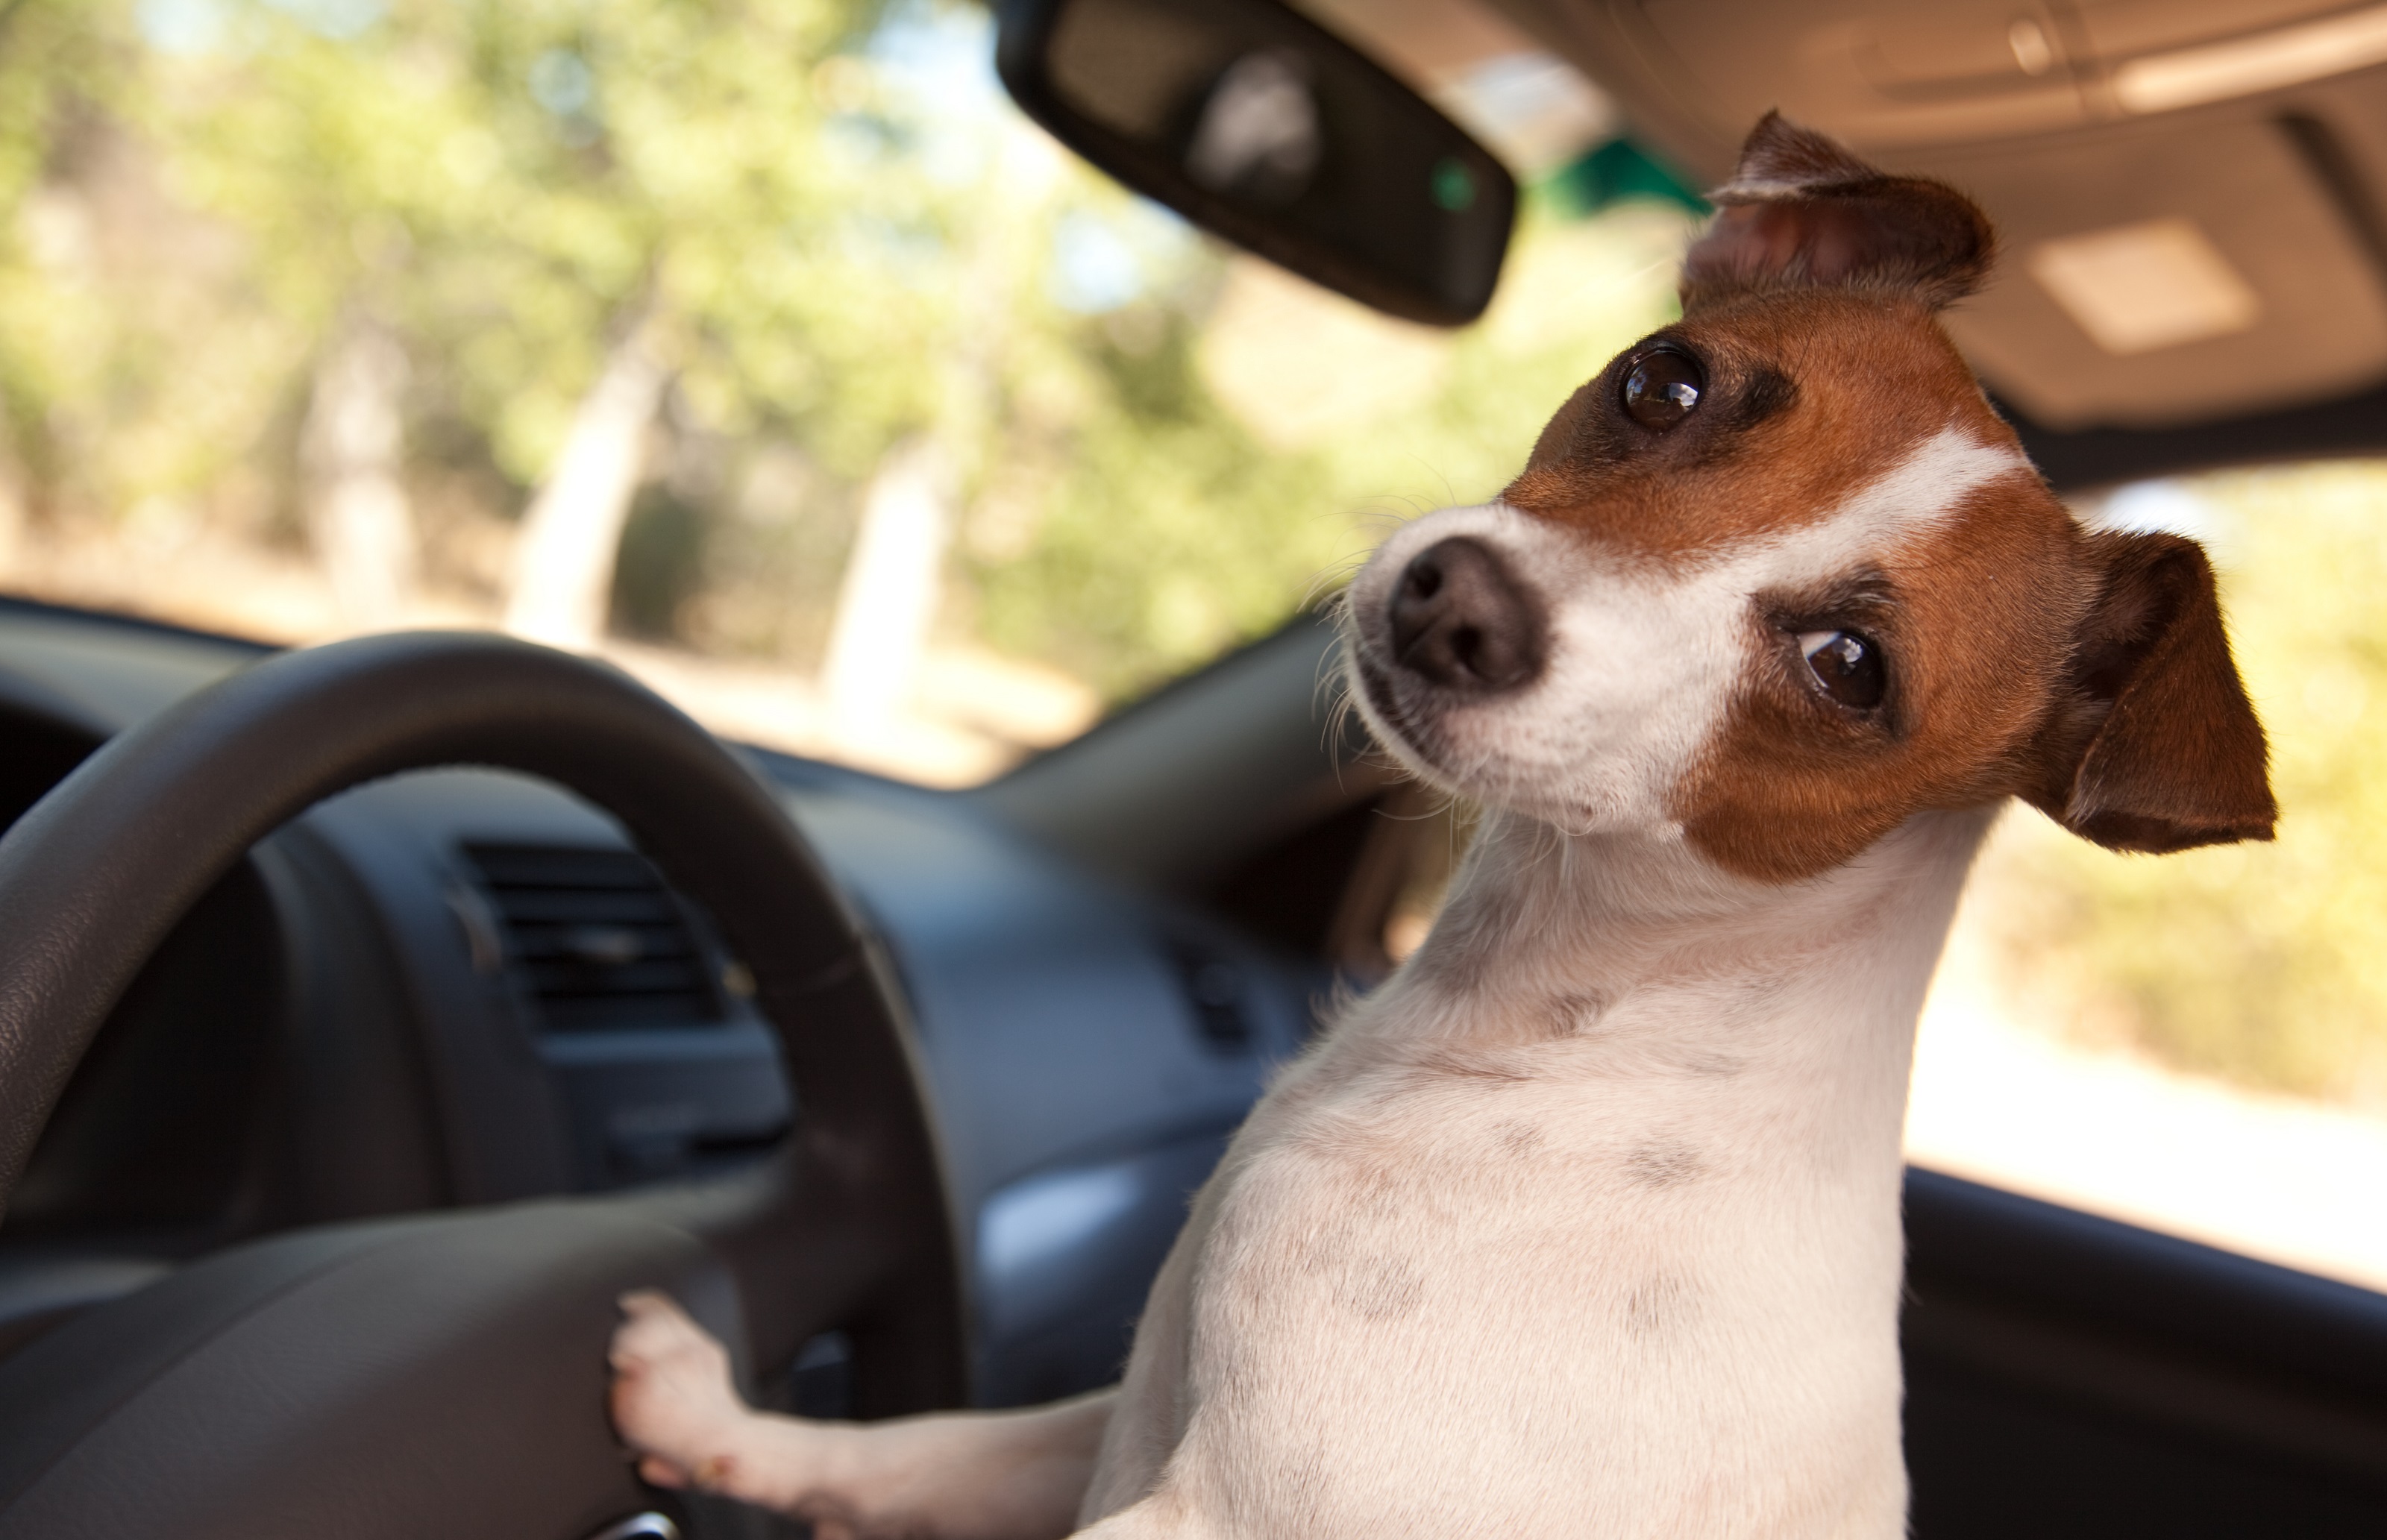 Lassen Sie Ihren Hund nicht unbeaufsichtigt im Auto!